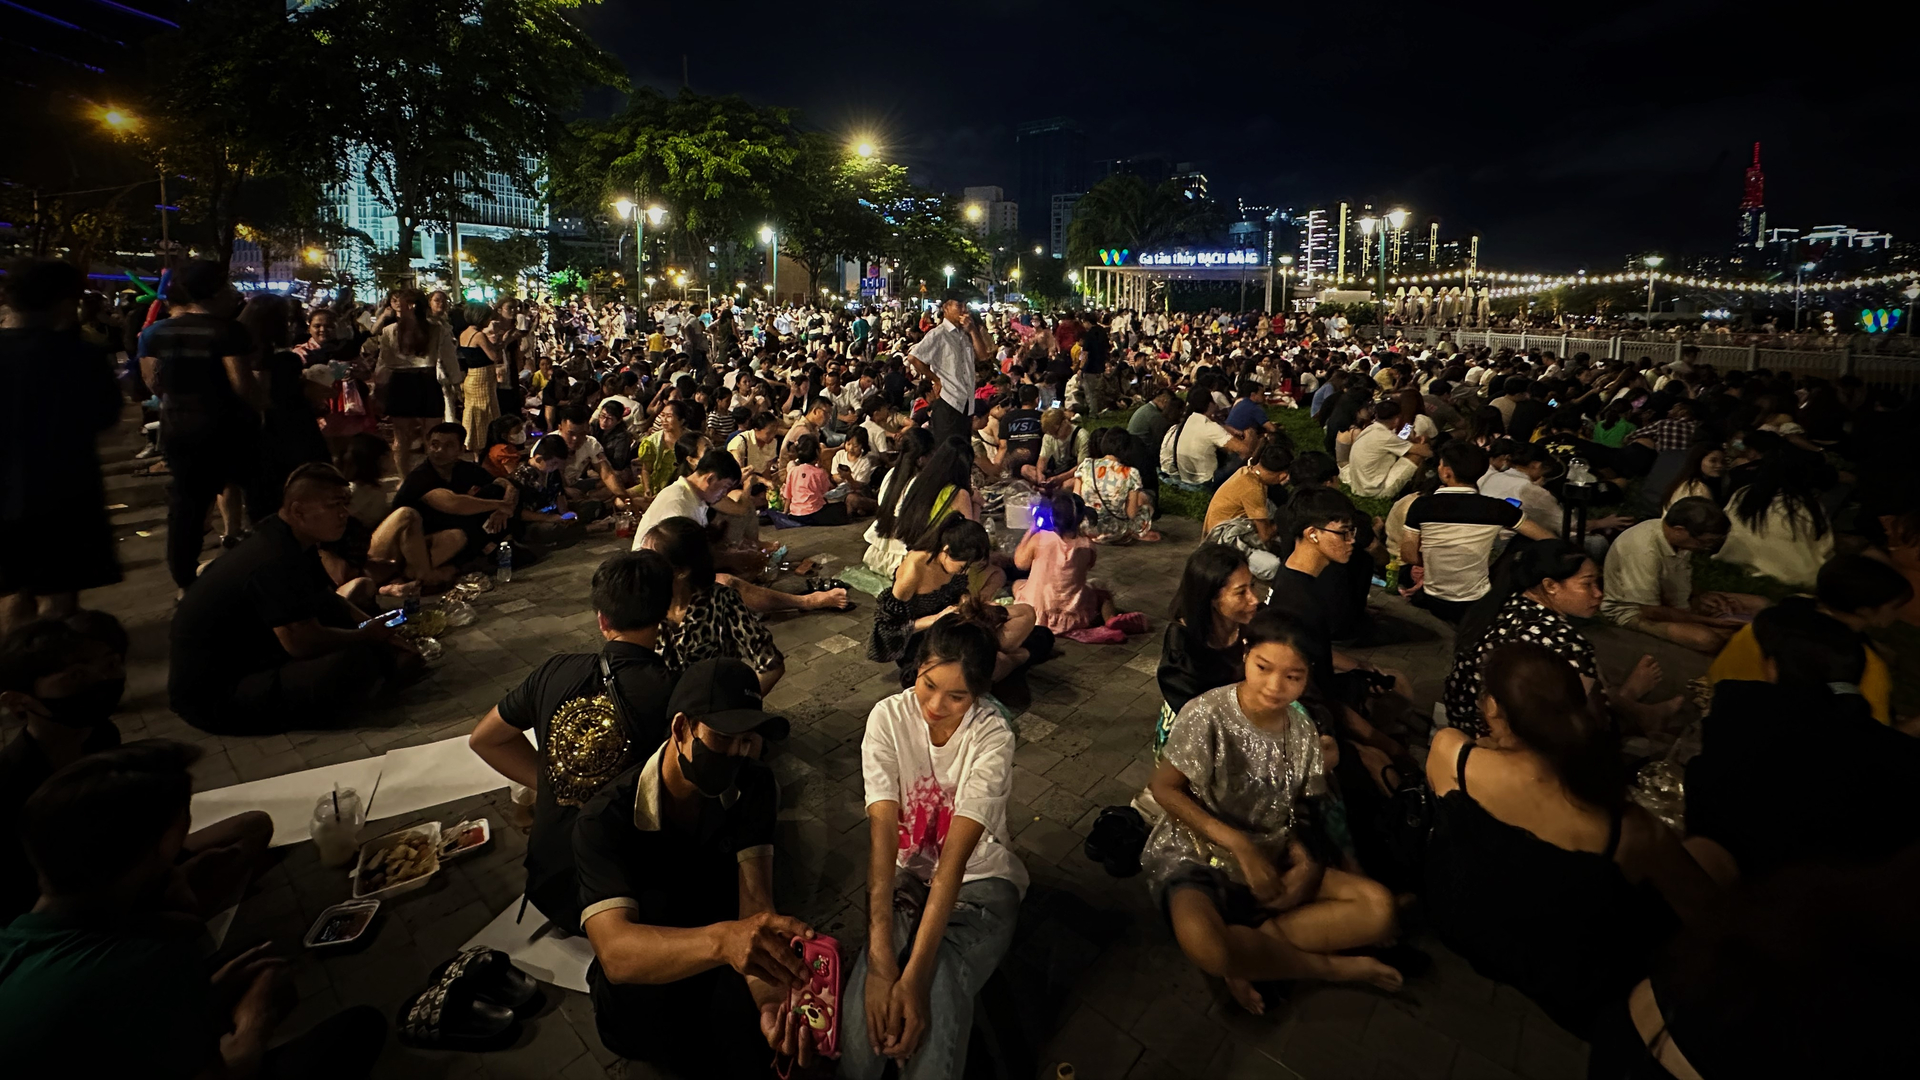 Ngay từ 19h, hàng chục nghìn người đã có mặt tại khu vực Công viên Bến Bạch Đằng, quận 1, TP.HCM để chờ đón màn trình diễn bắn pháo hoa mừng ngày Quốc khánh 2/9 bên bờ sông Sài Gòn.